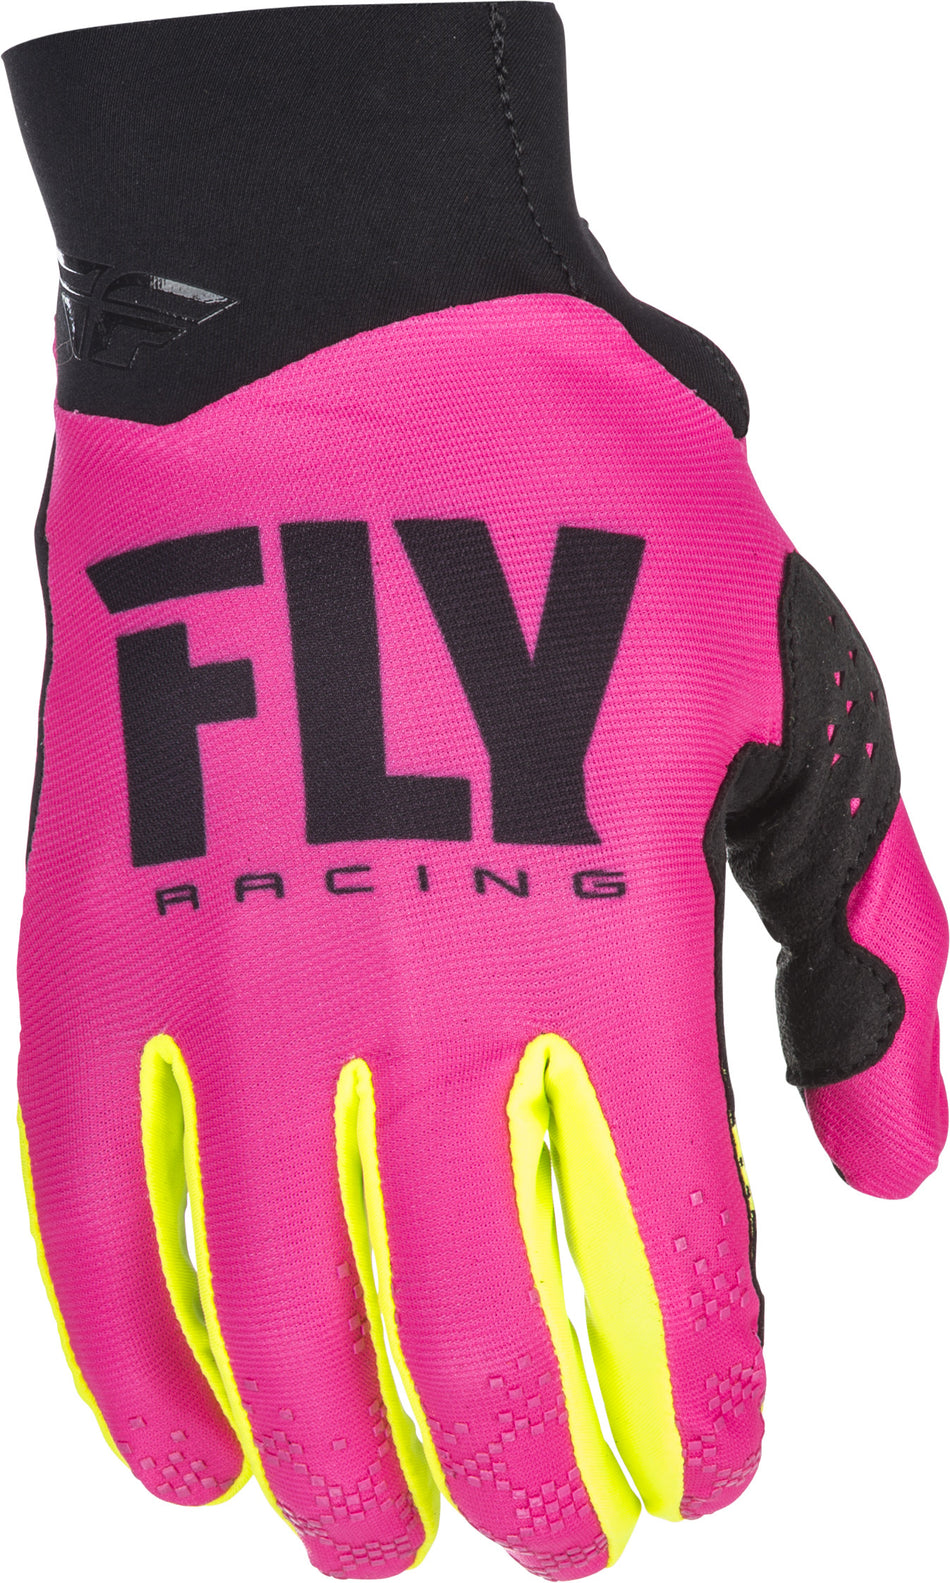 FLY RACING Pro Lite Gloves Neon Pink/Hi-Vis Sz 10 371-81710